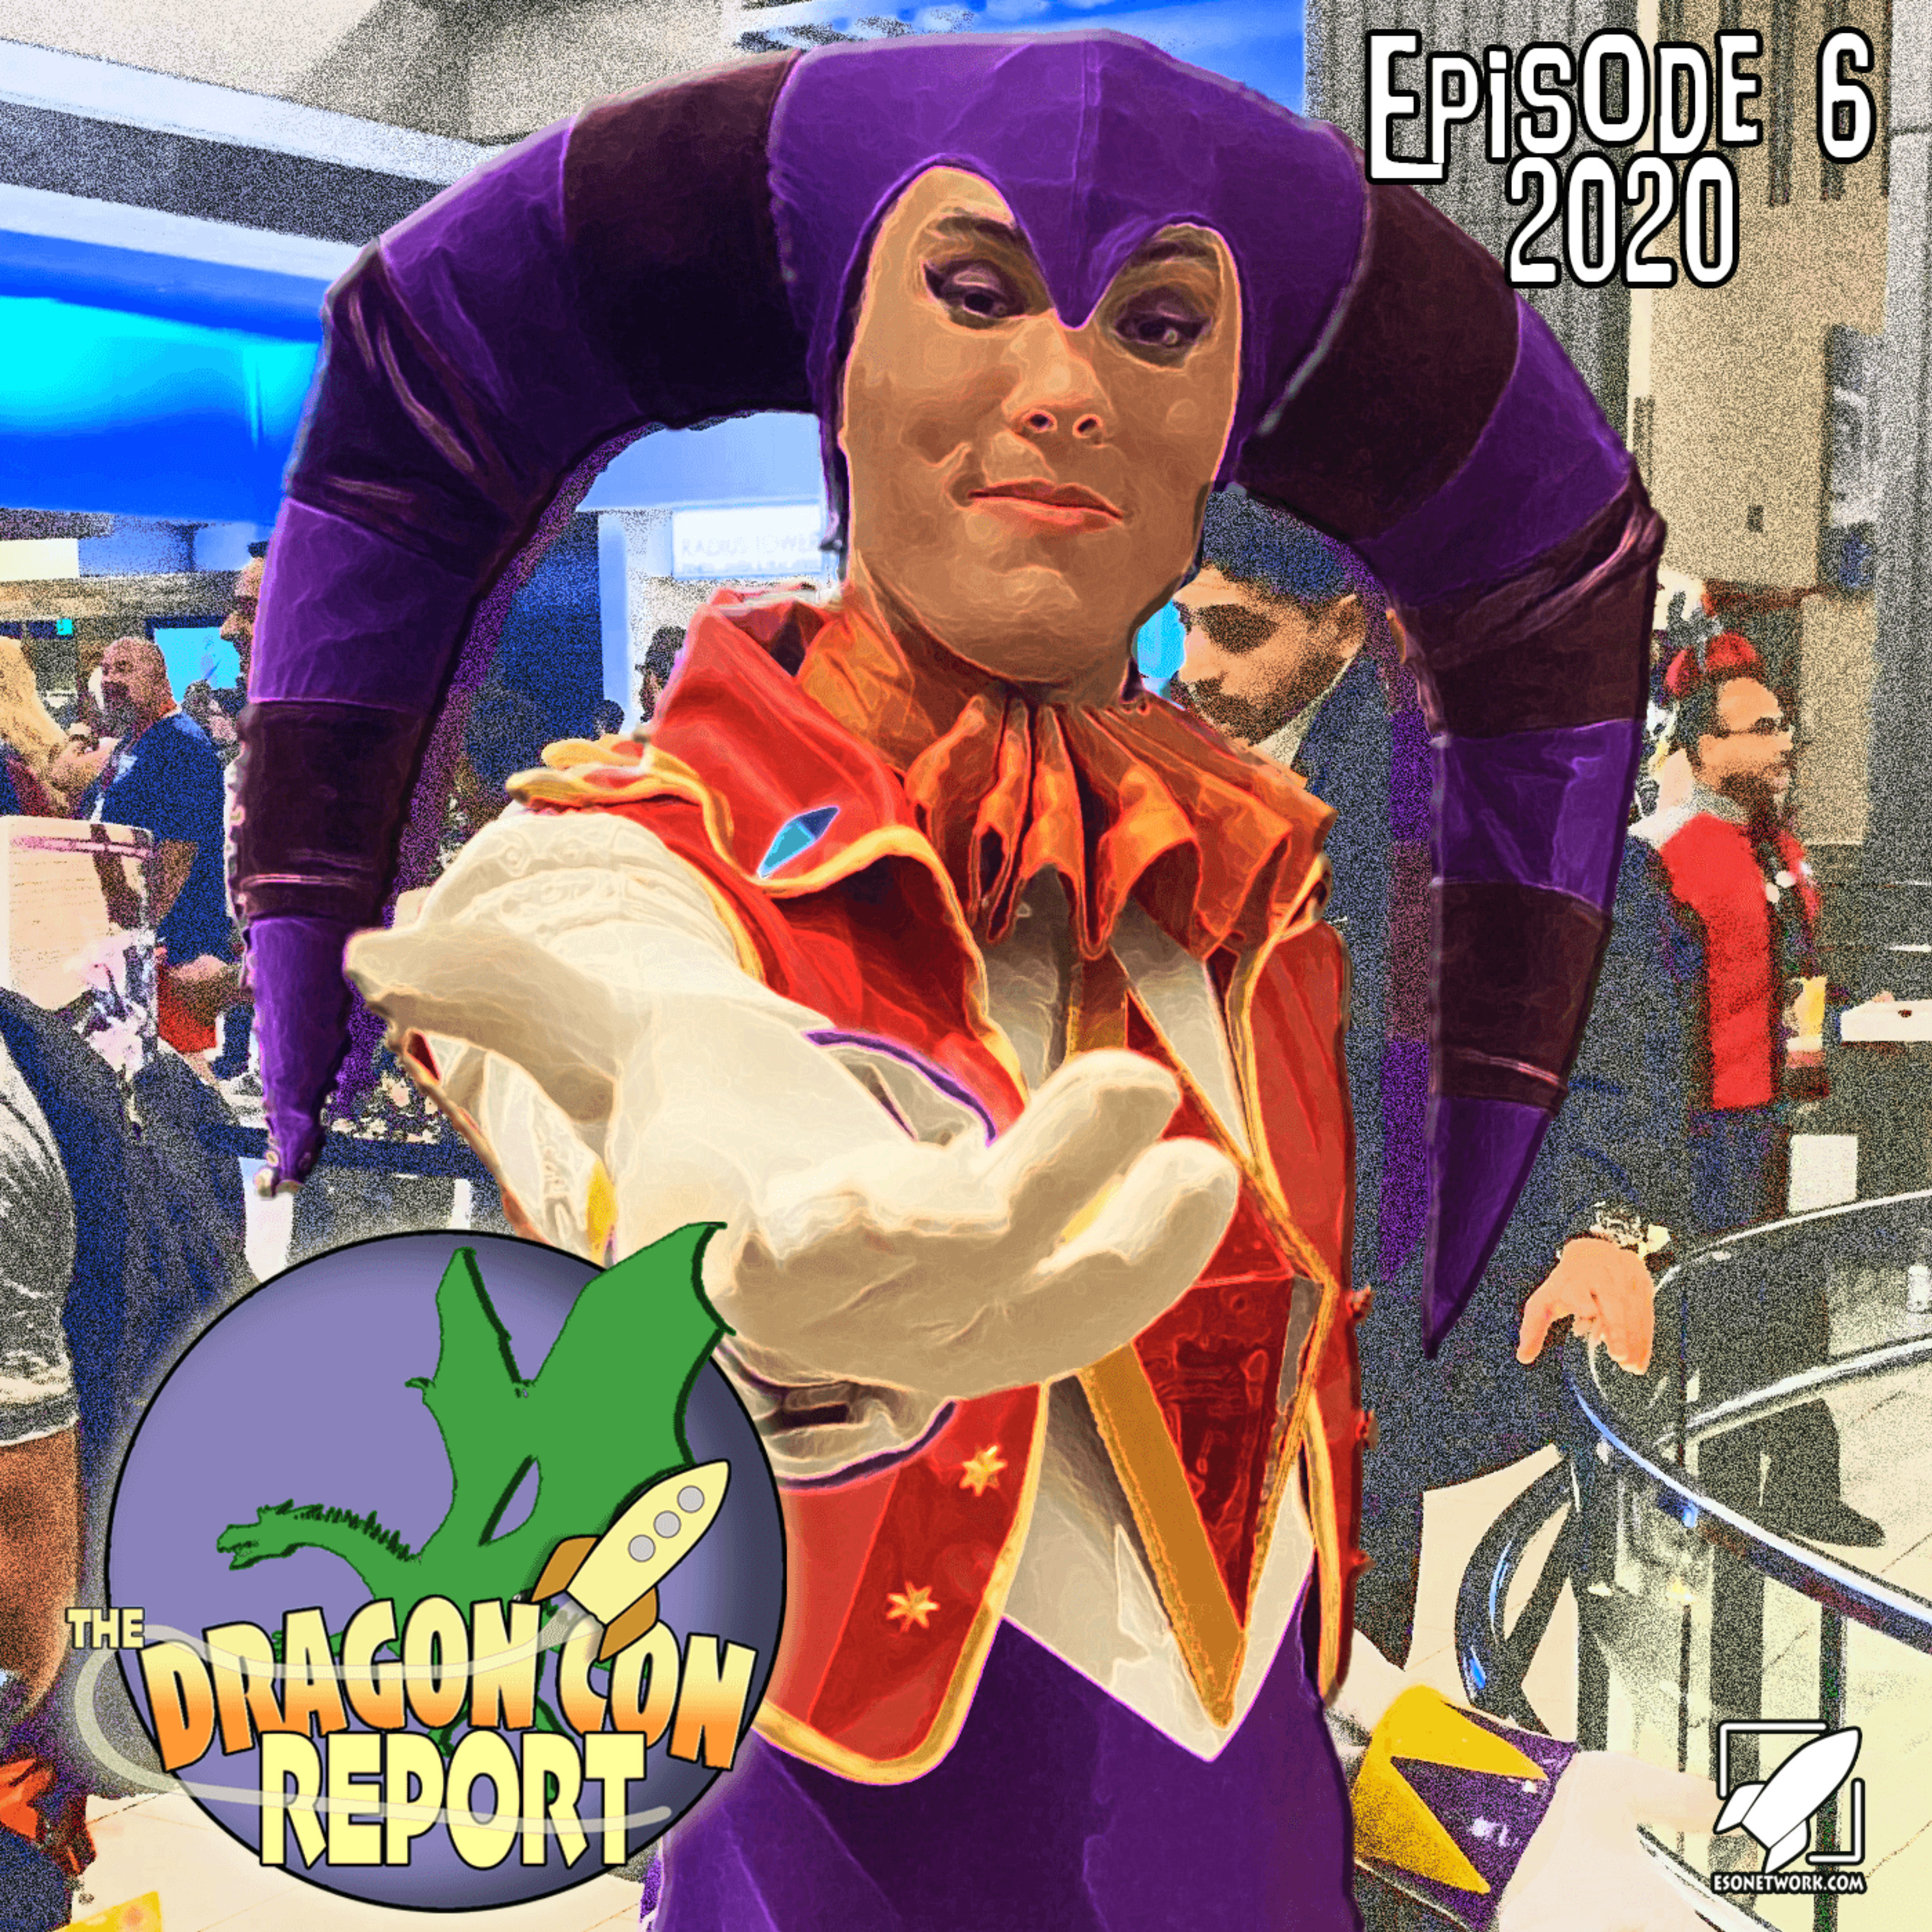 The 2020 Dragon Con Report Episode 6